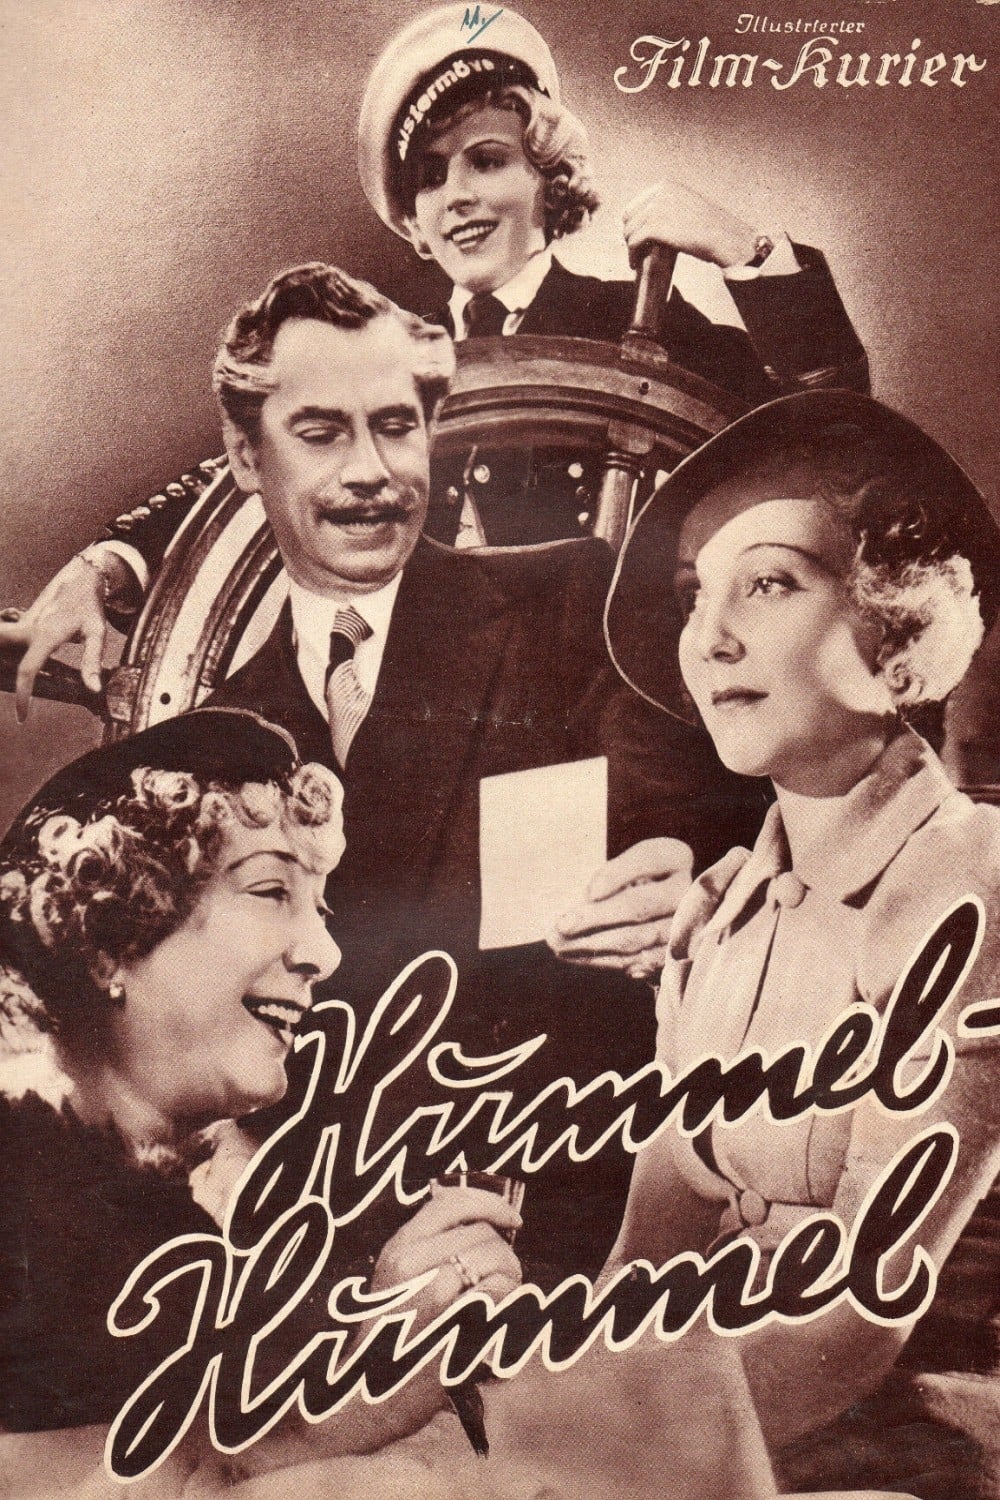 Hummel - Hummel (1936)